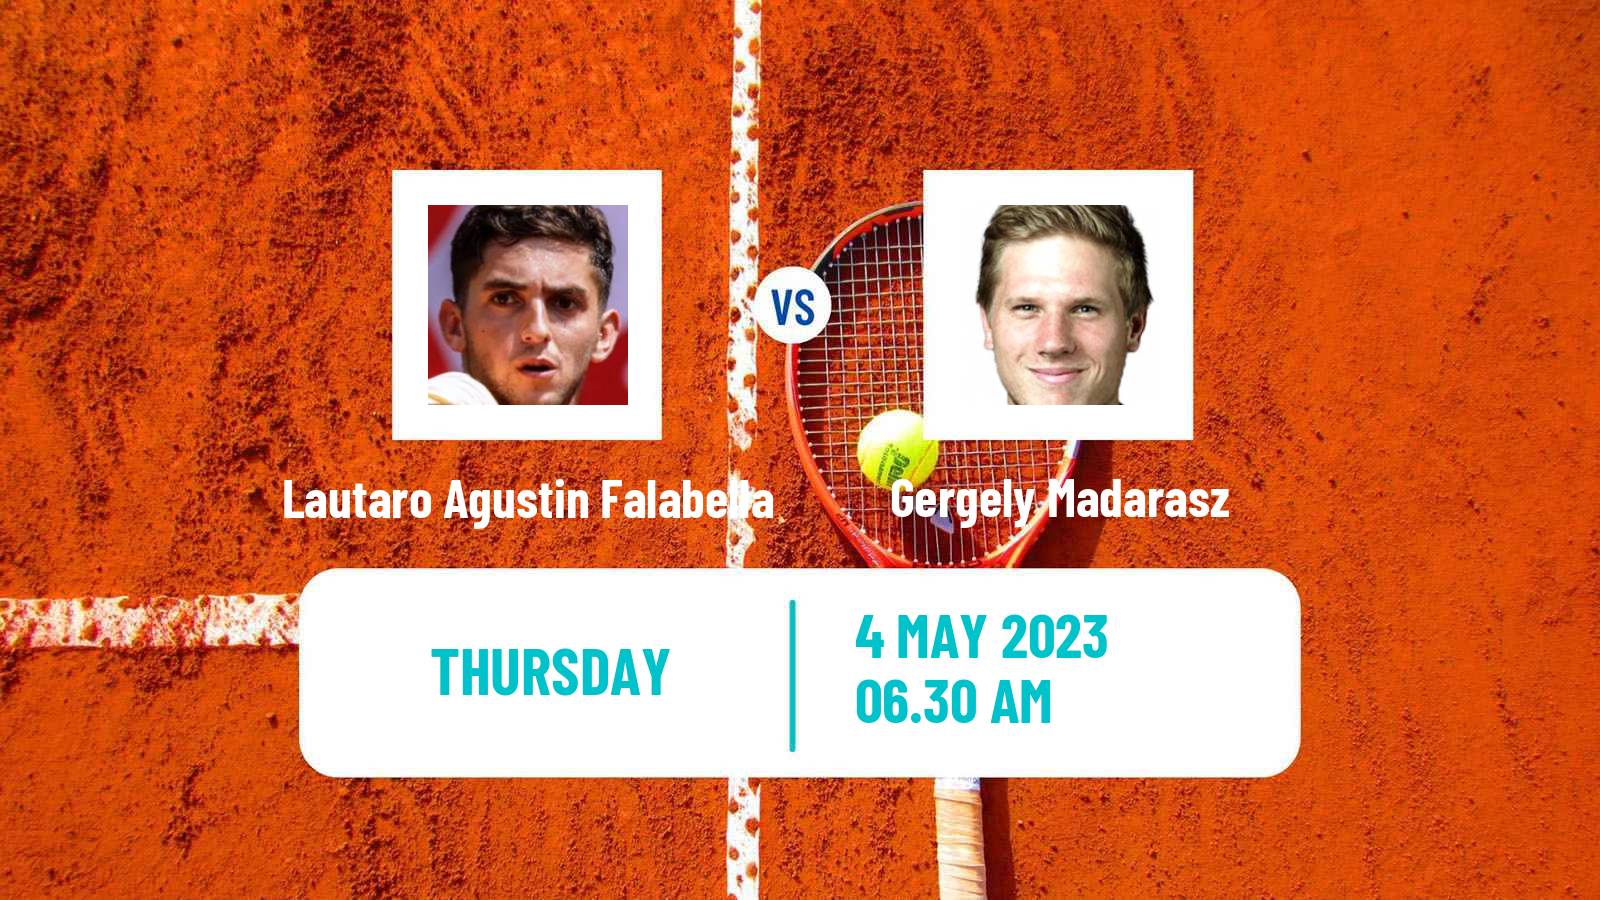 Tennis ITF Tournaments Lautaro Agustin Falabella - Gergely Madarasz